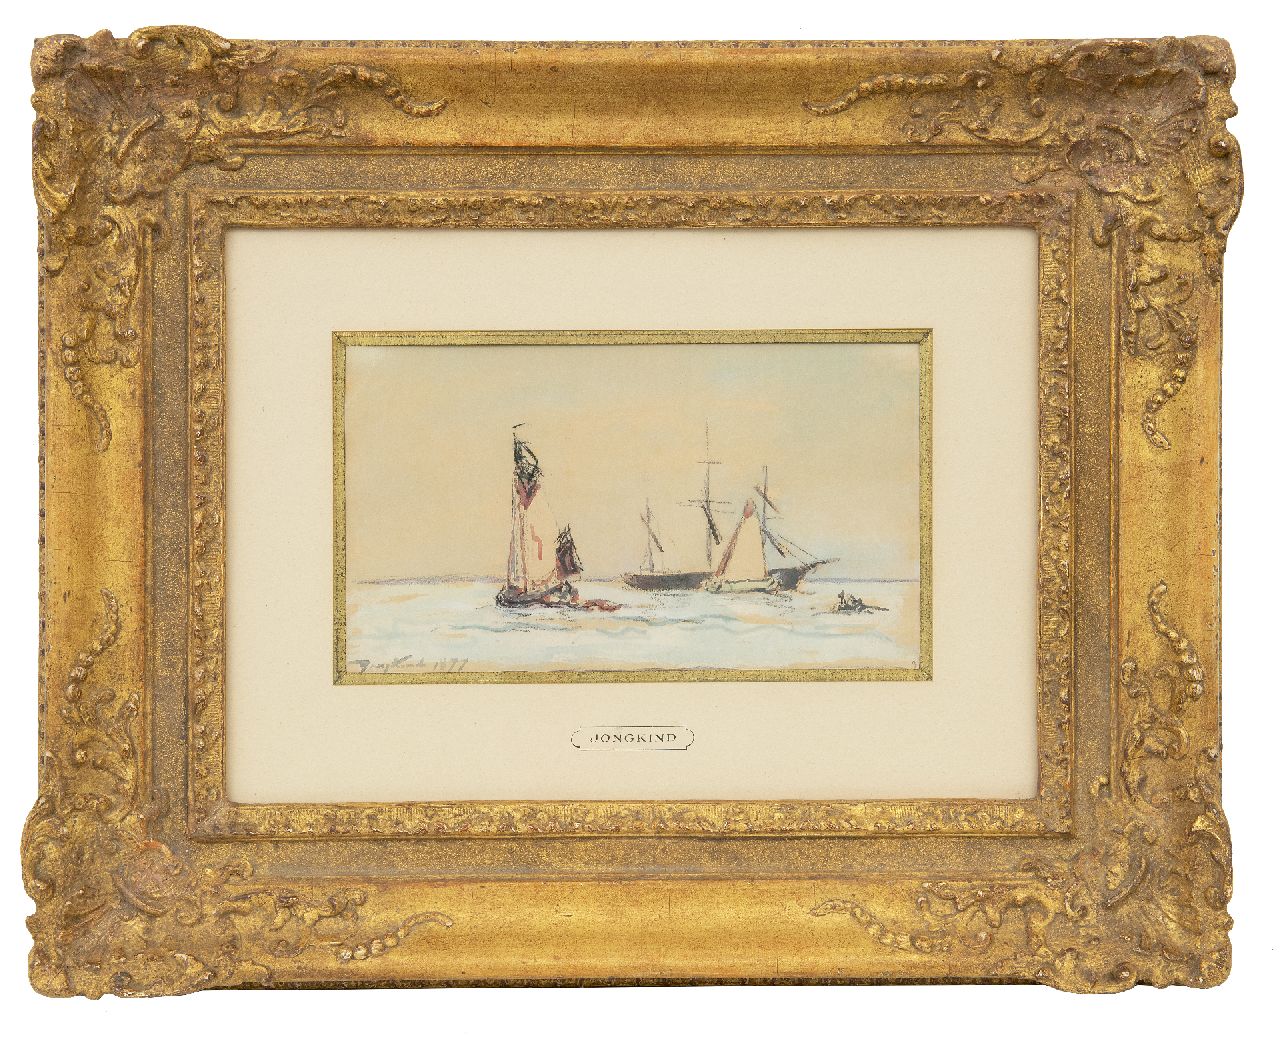 Jongkind J.B.  | Johan Barthold Jongkind, Zeilschepen op de rivier, krijt en aquarel op papier 15,0 x 26,0 cm, gesigneerd linksonder en gedateerd 1877